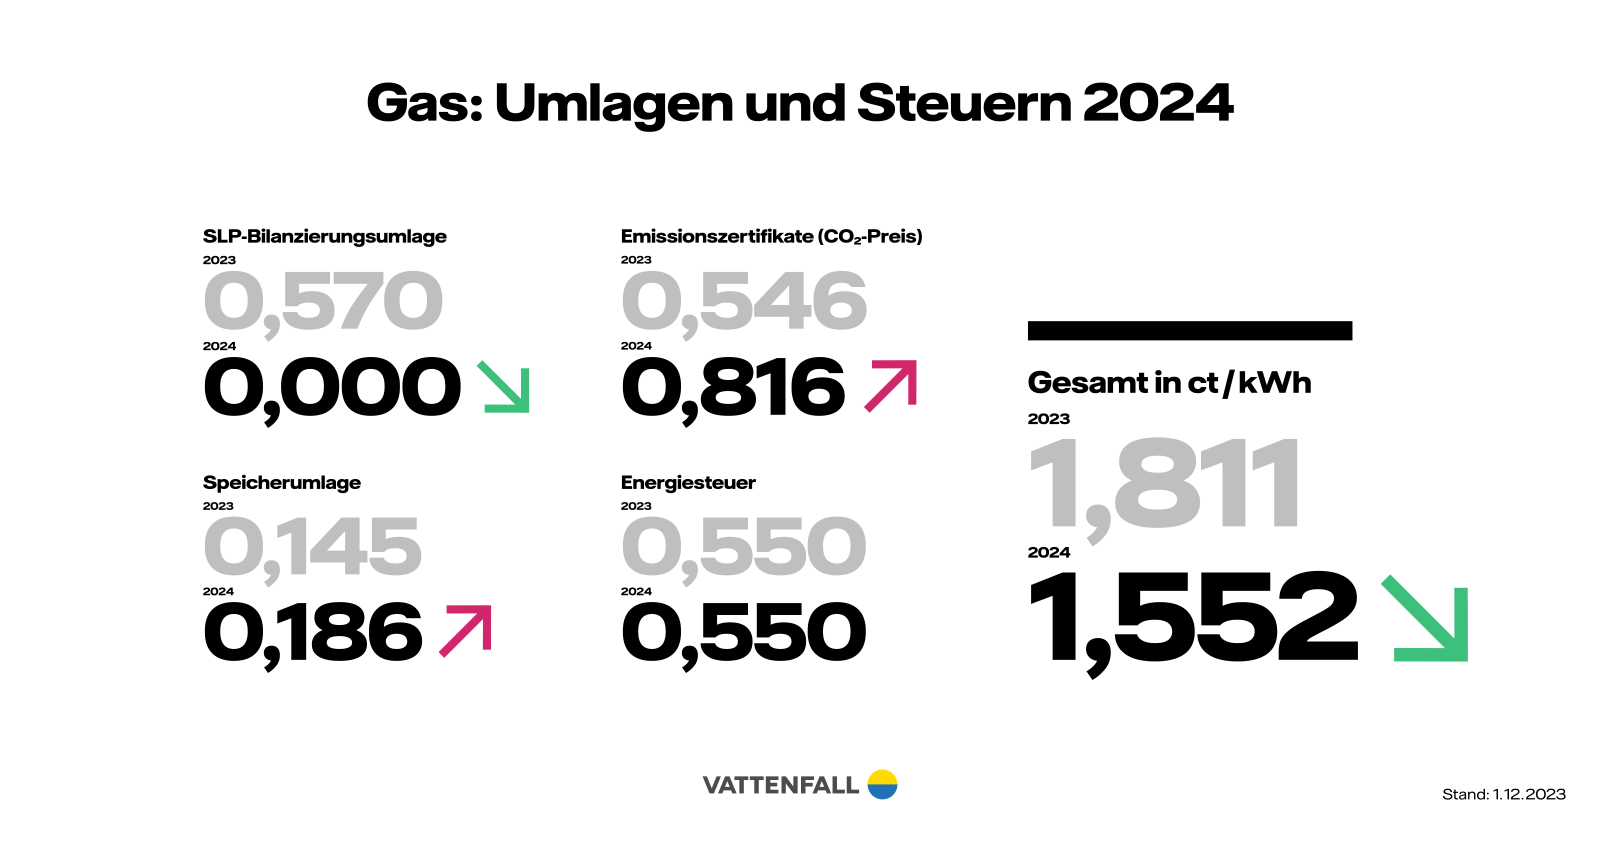 Preisentwicklung Gas 2024 - Umlagen und Steuern